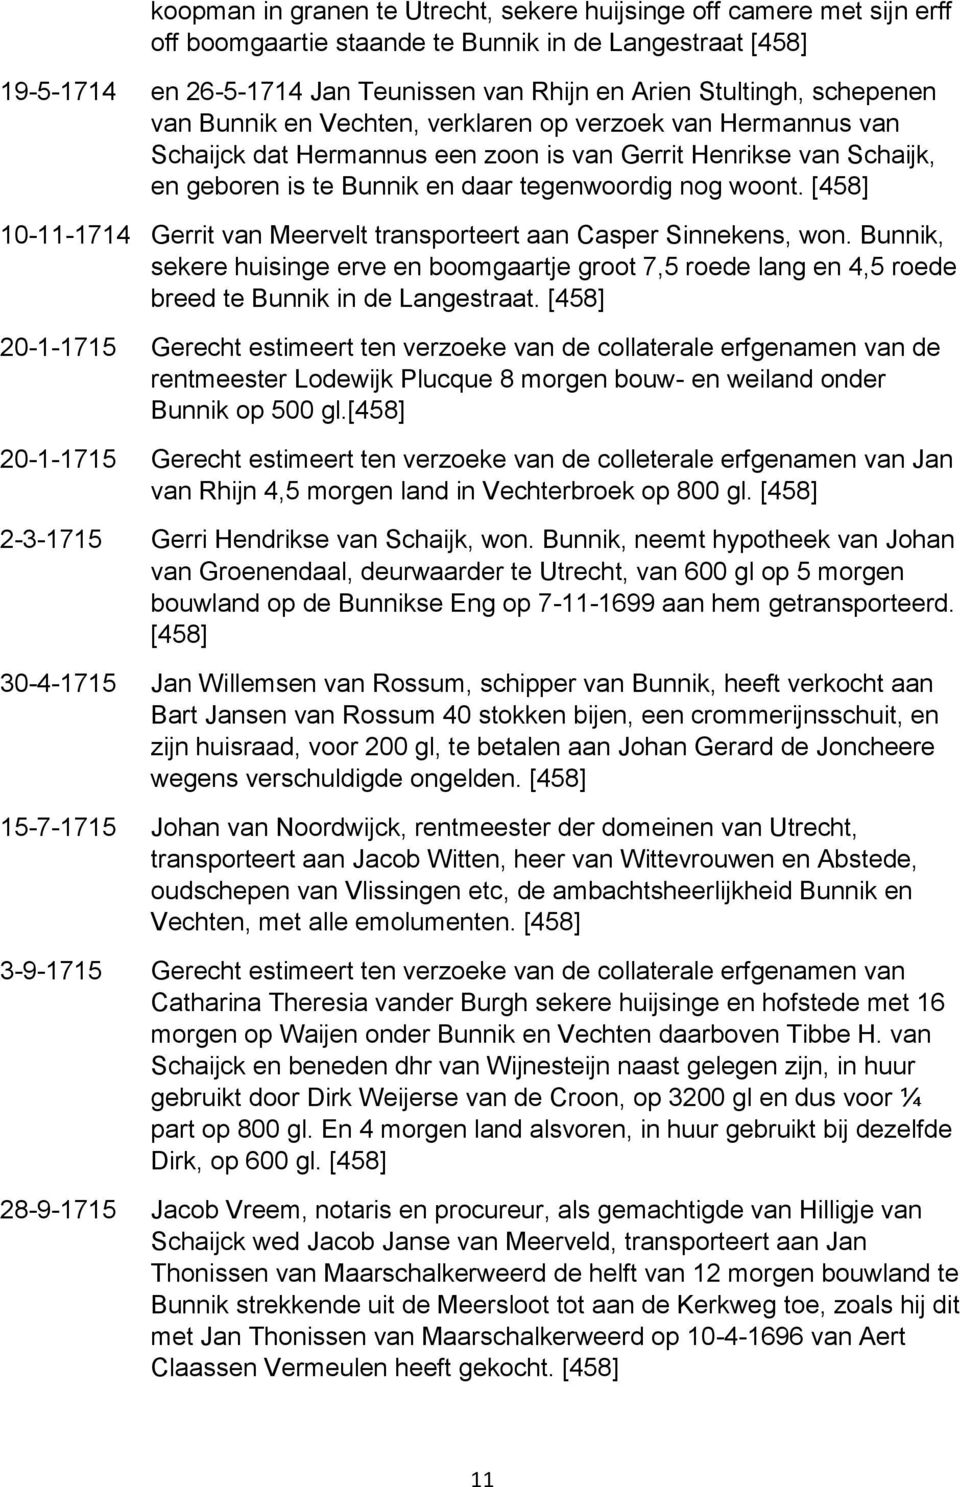 10-11-1714 Gerrit van Meervelt transporteert aan Casper Sinnekens, won. Bunnik, sekere huisinge erve en boomgaartje groot 7,5 roede lang en 4,5 roede breed te Bunnik in de Langestraat.